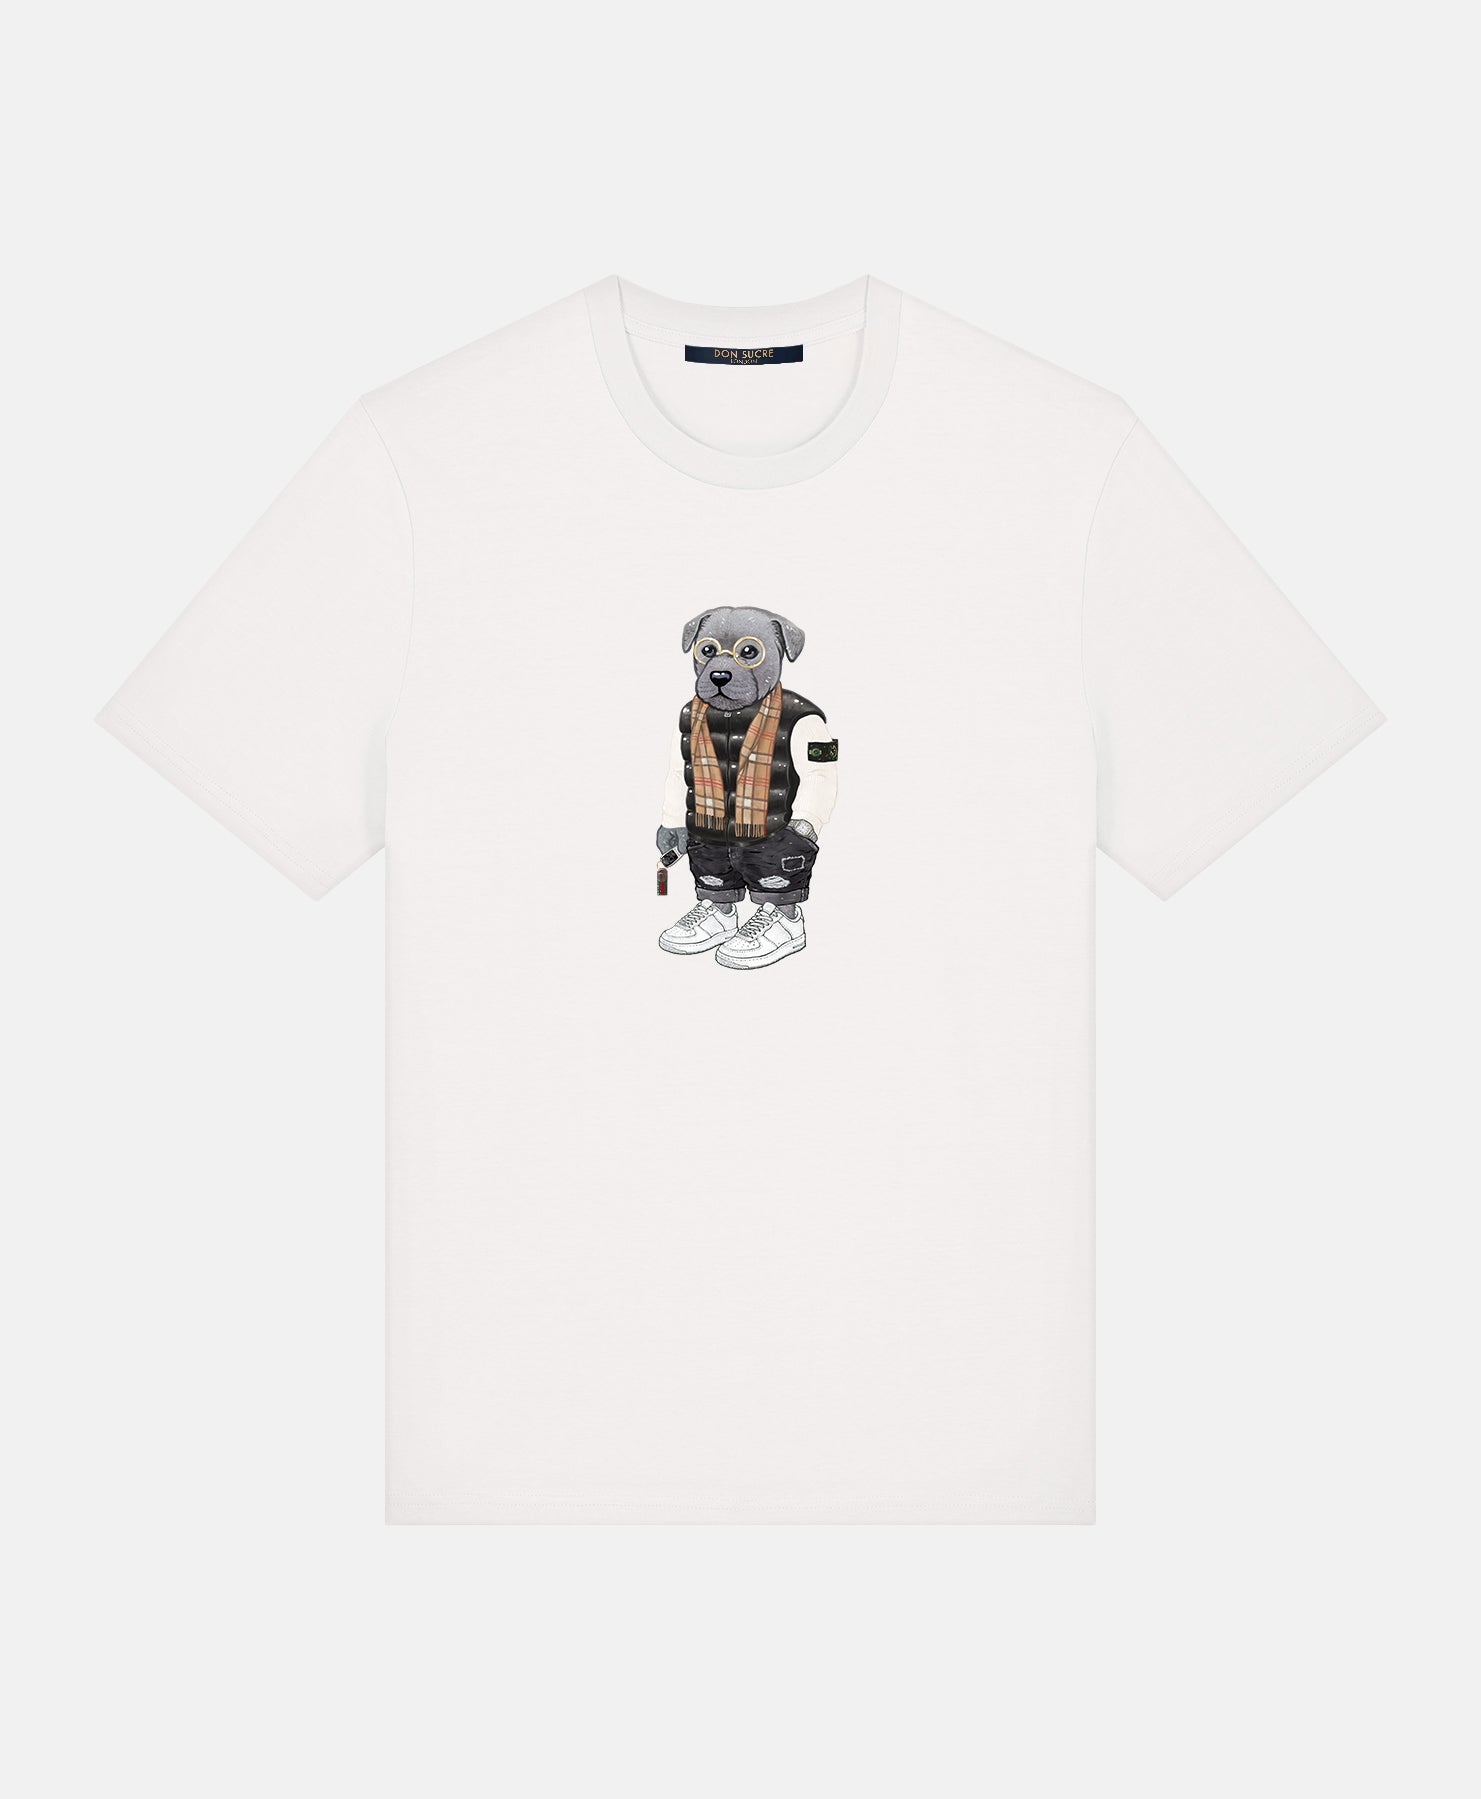 Staffordshire Bull Terrier T-Shirt White